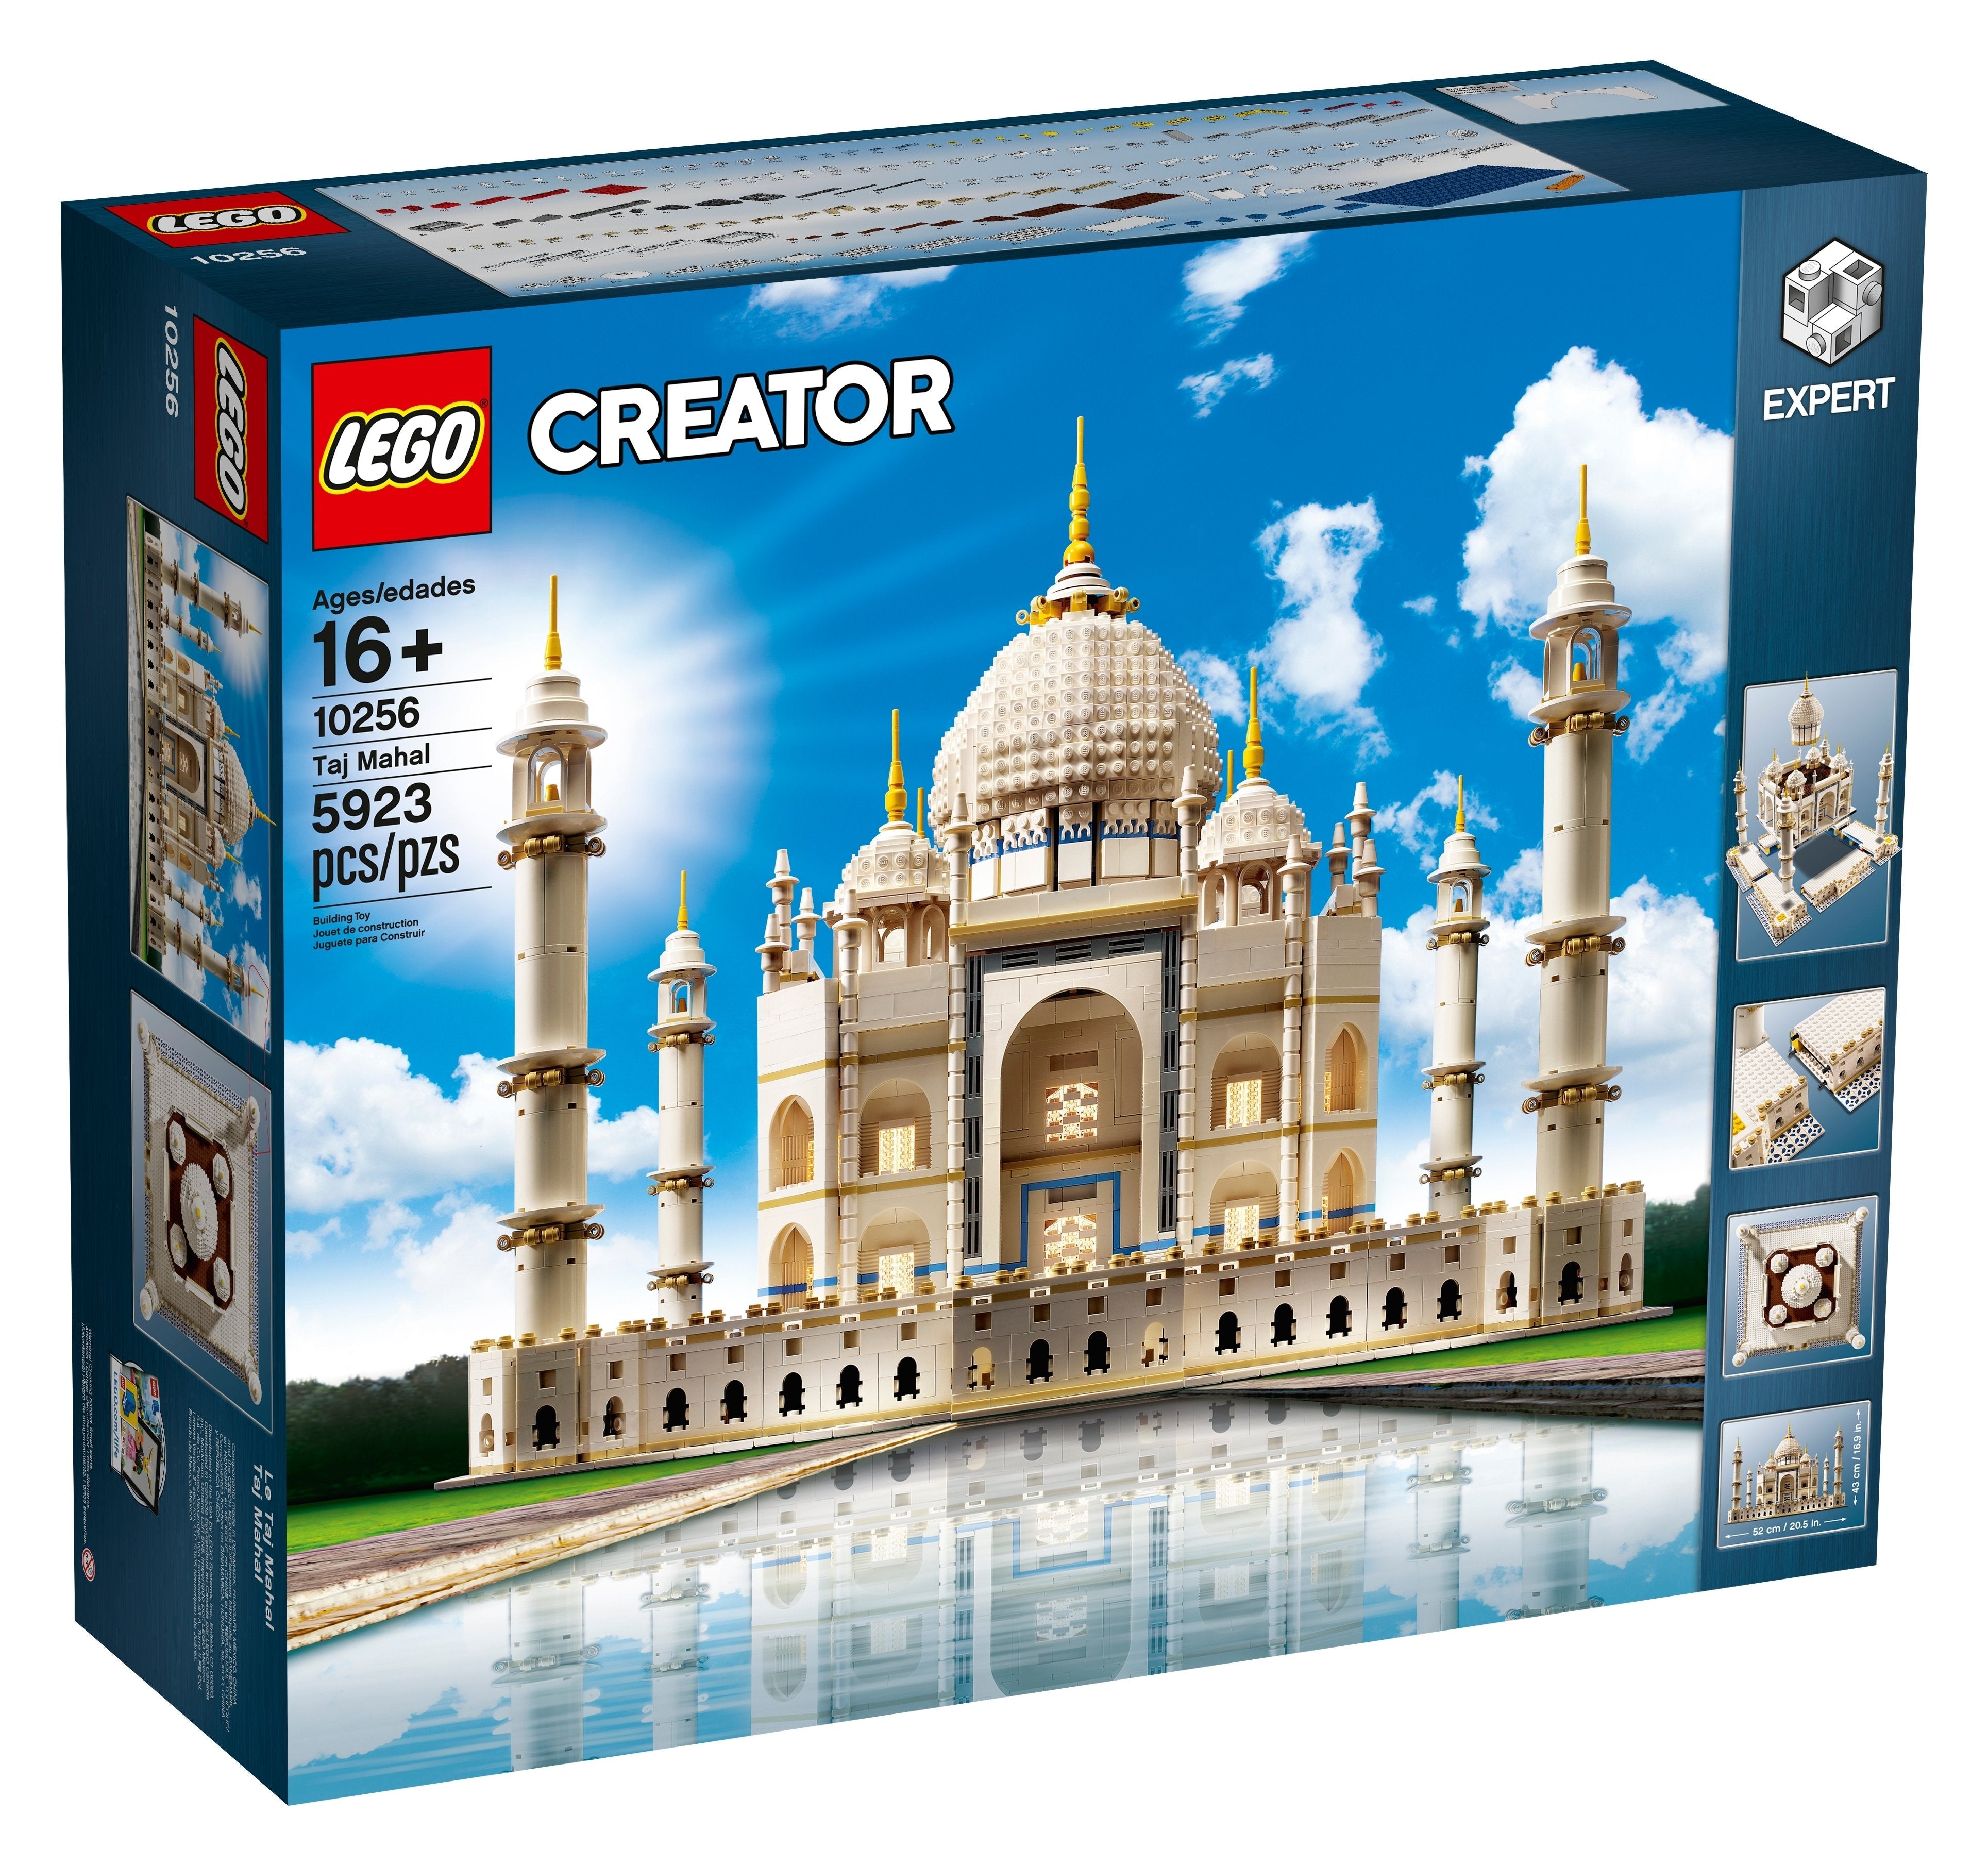 LEGO Creator Taj Mahal (10256) - im GOLDSTIEN.SHOP verfügbar mit Gratisversand ab Schweizer Lager! (5702016173536)